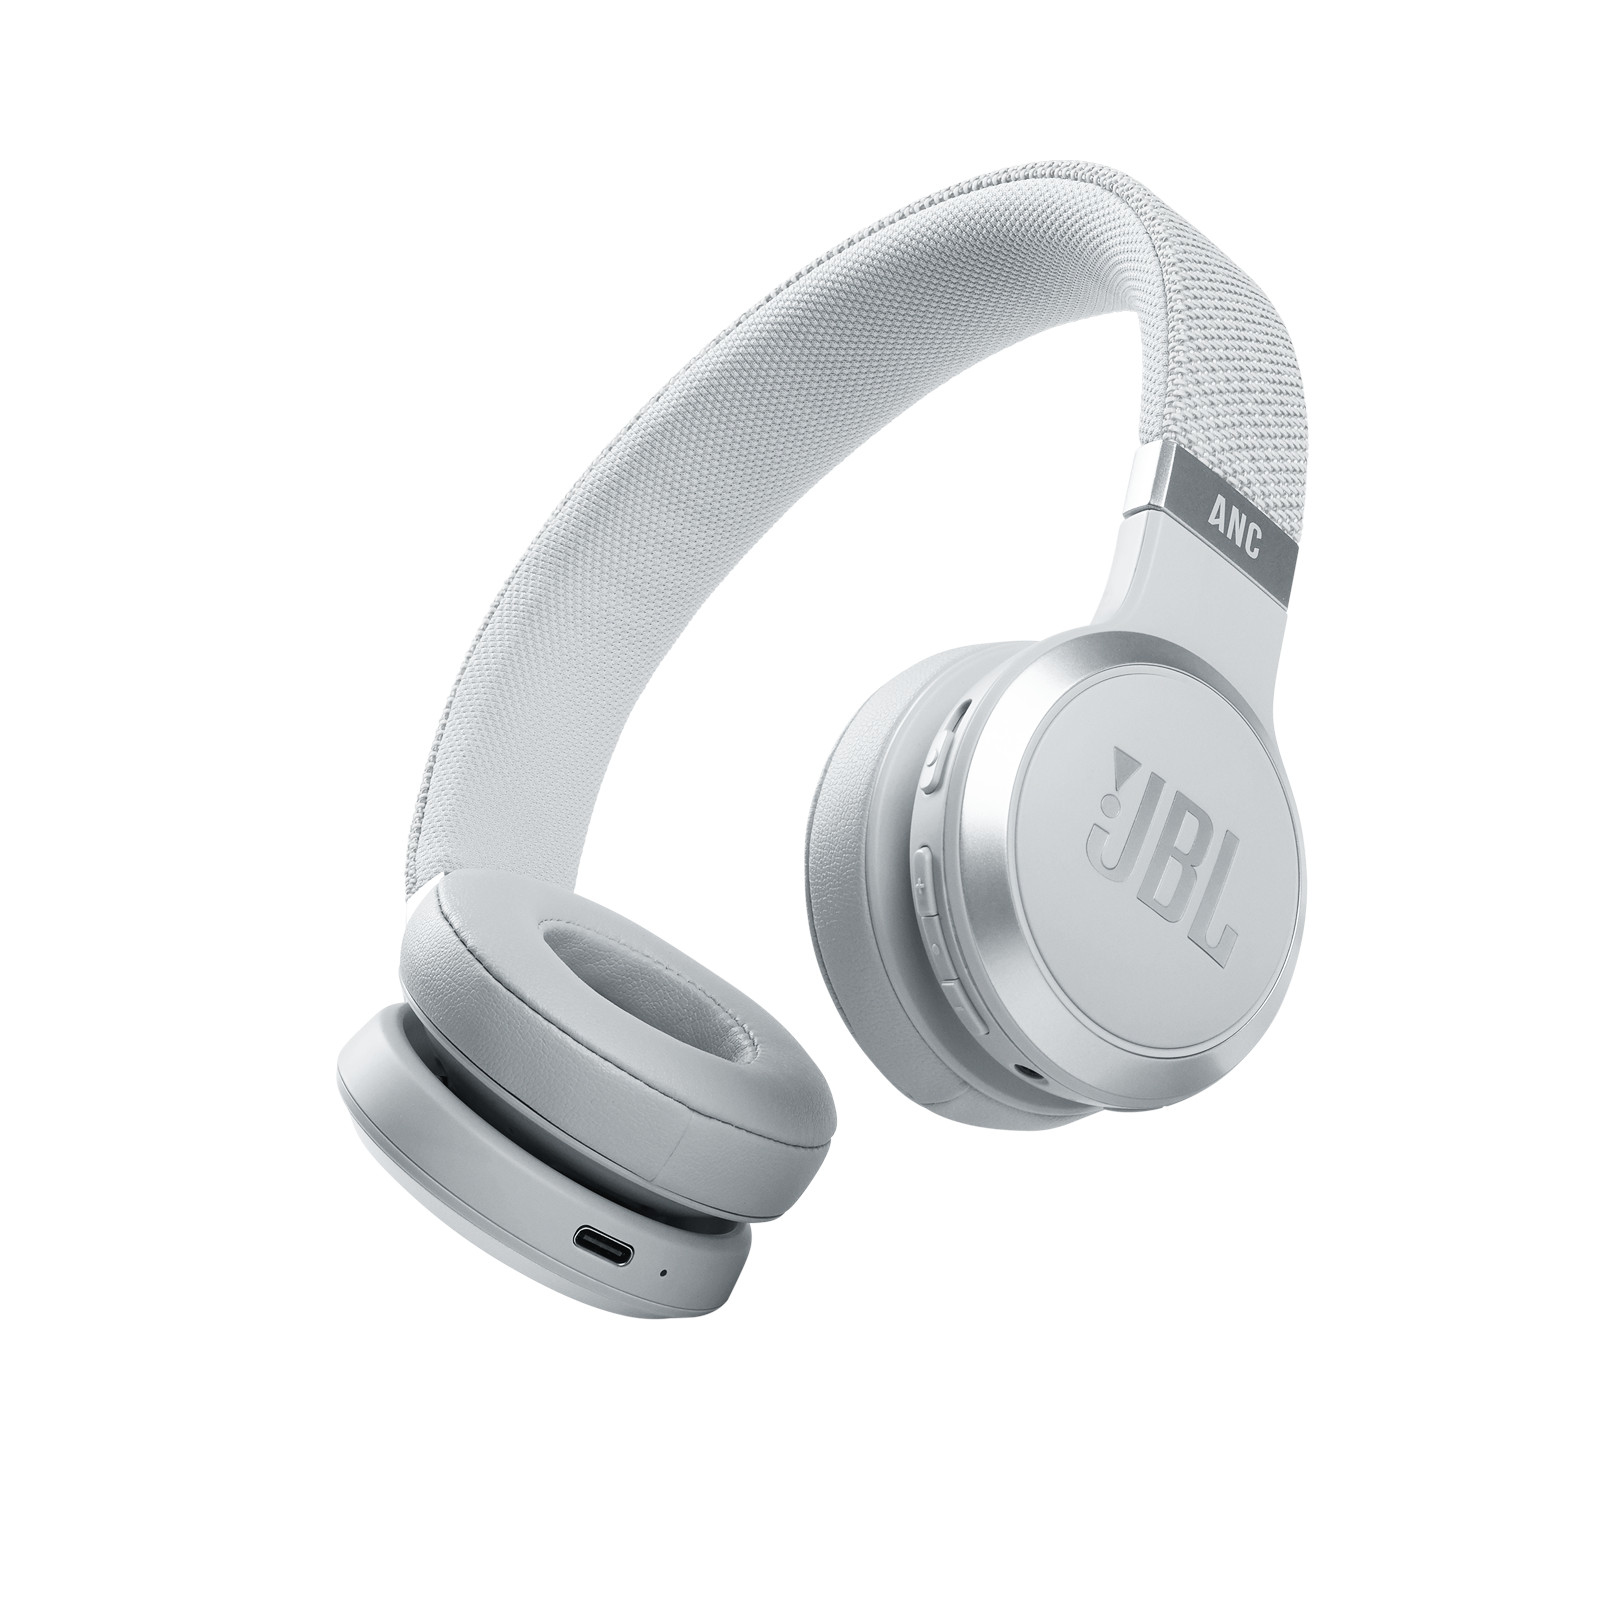 JBL headphone on-ear live 460 nc  white